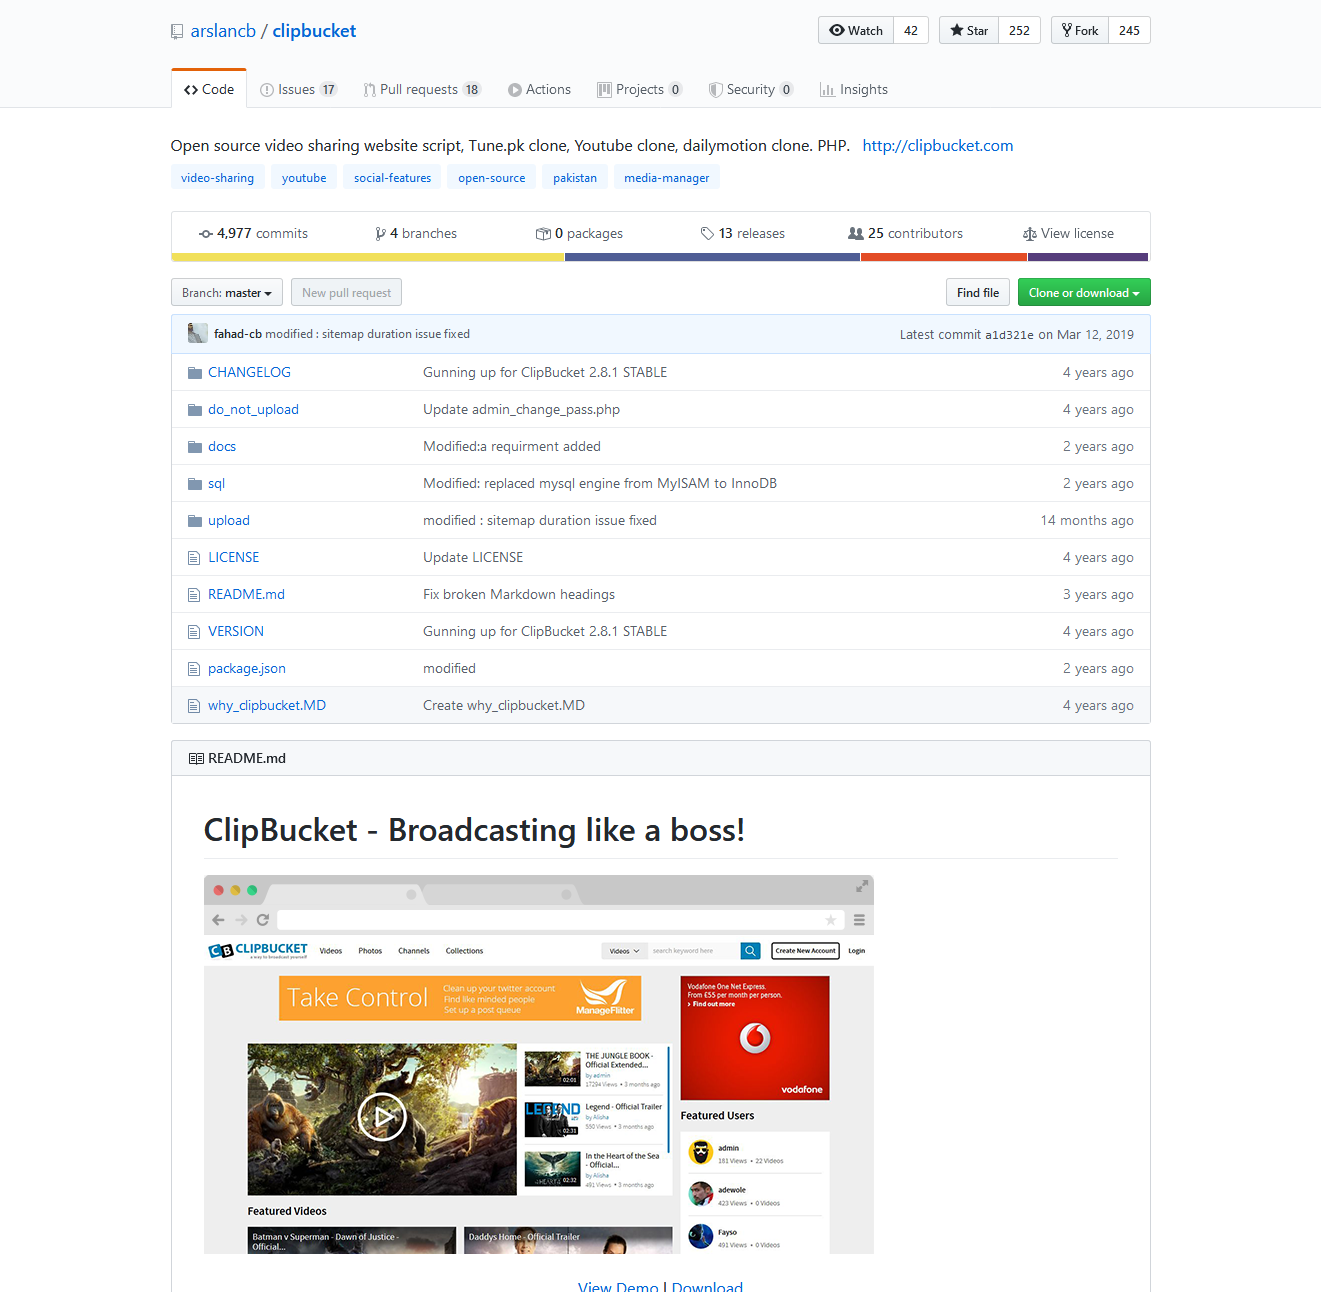 ClipBucket's repository on Github